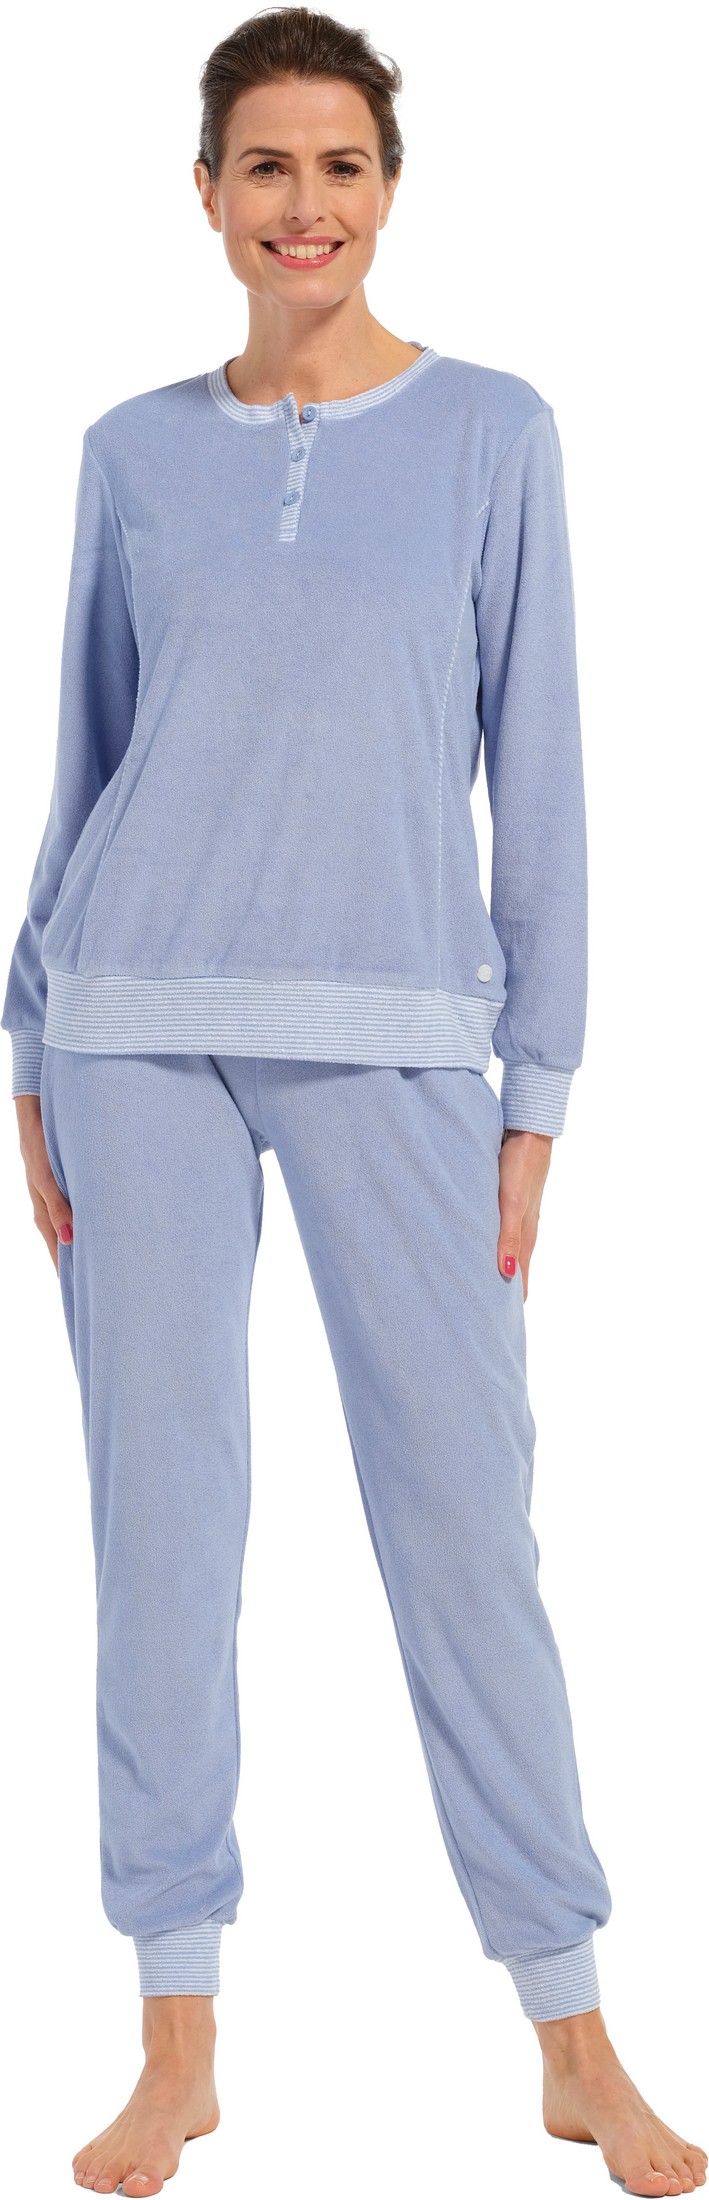 Pastunette dames badstof pyjama 20232-174-4 - Blauw - 38